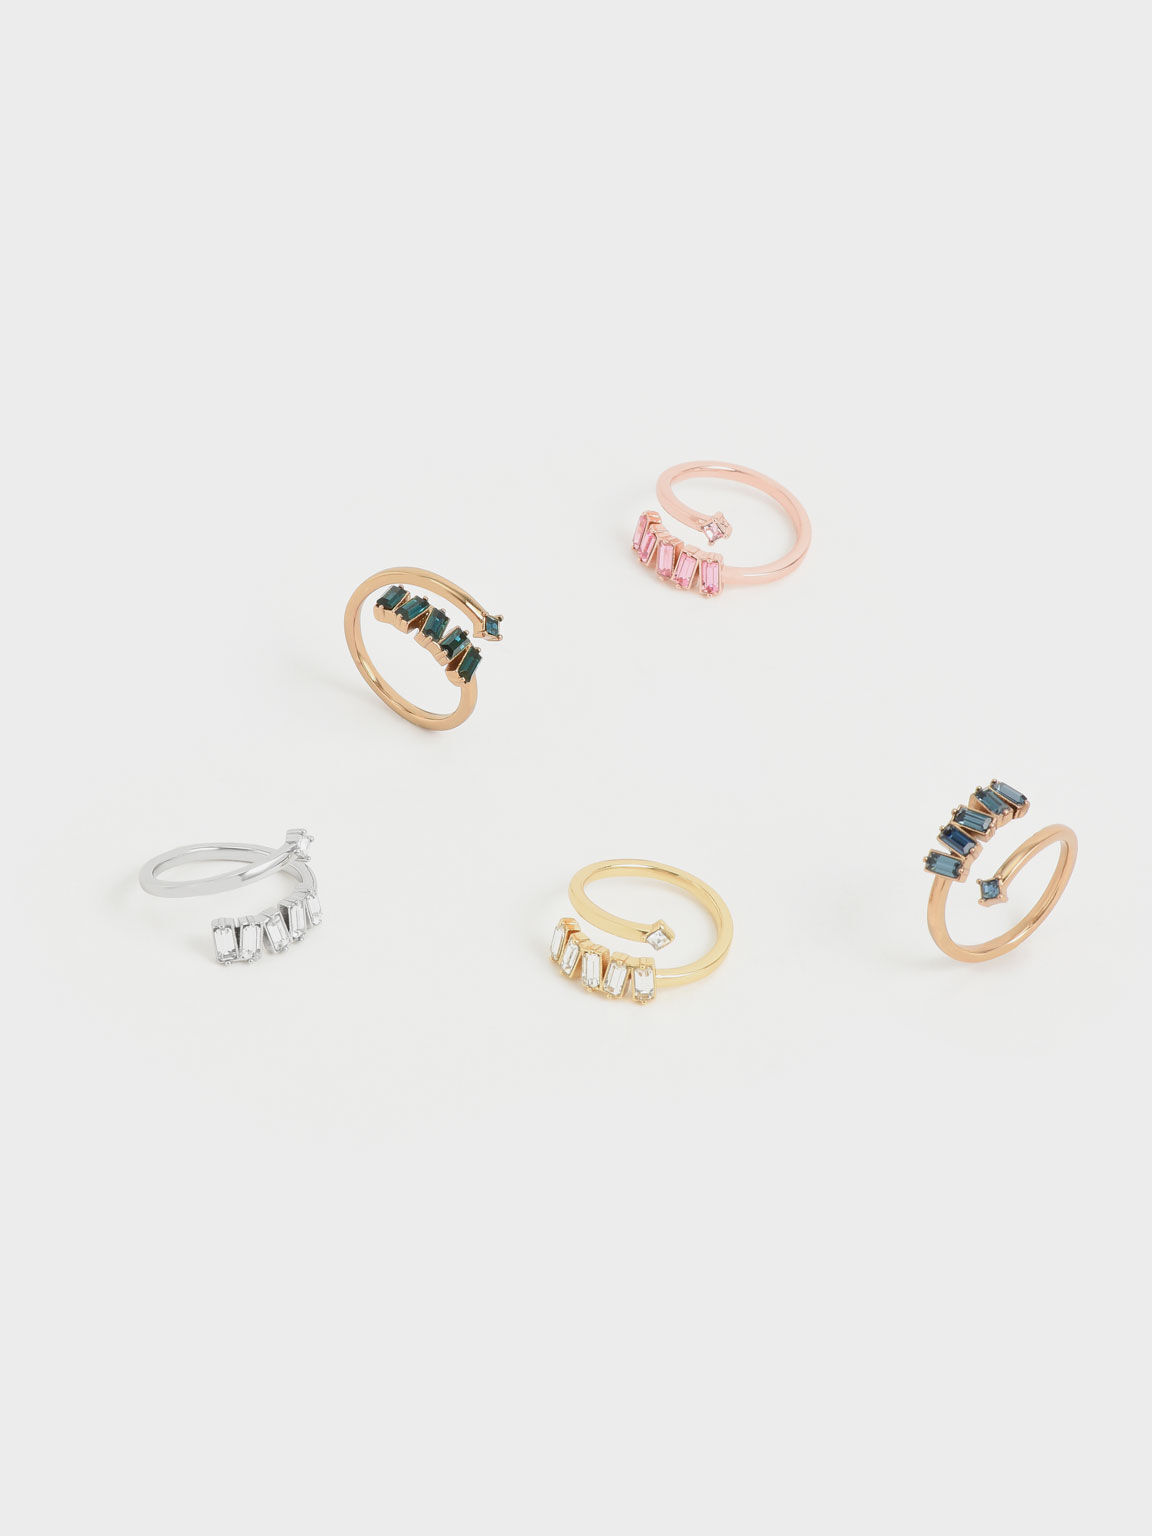 Swarovski® Crystal Embellished Wrap Ring, Rose Gold, hi-res